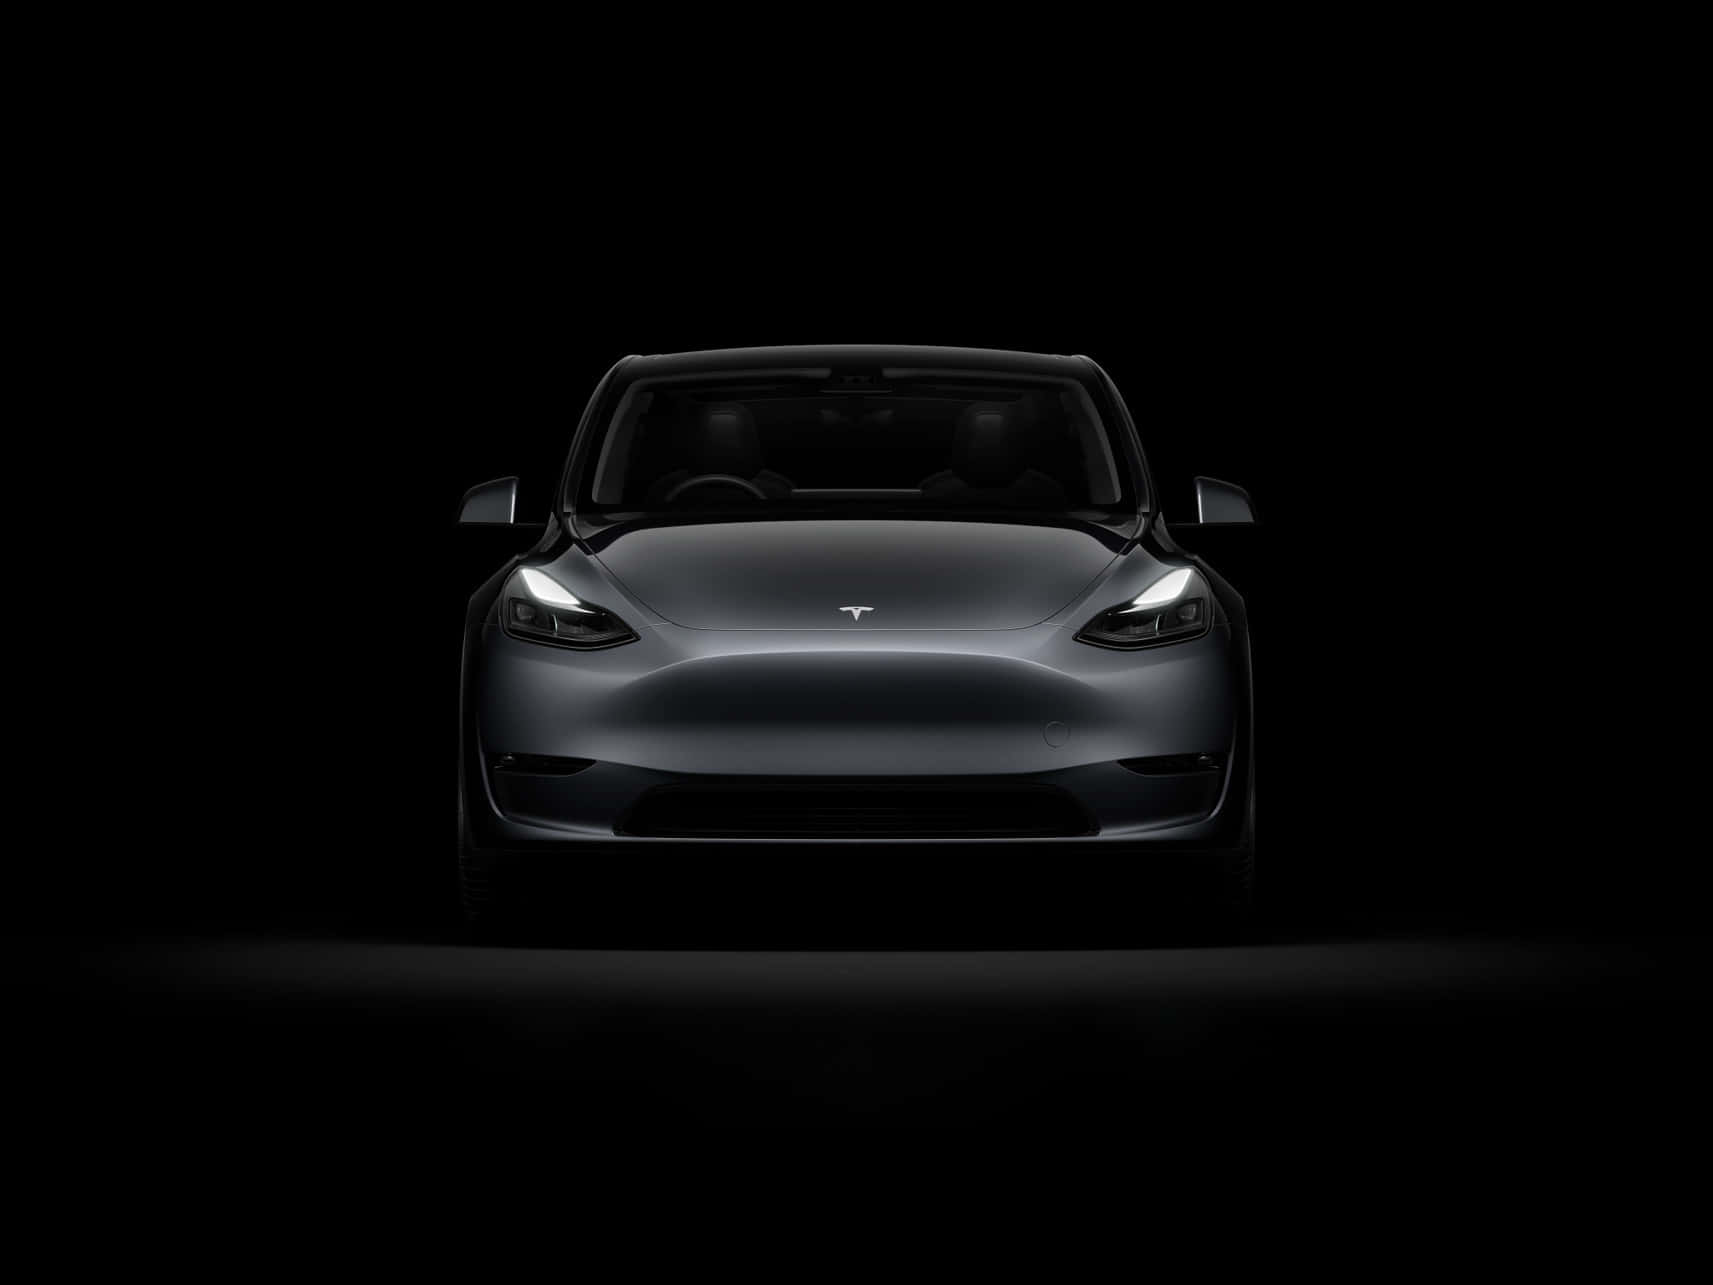 Teslamodel 3 - Inspirerar Framtidens Elektriska Fordon.